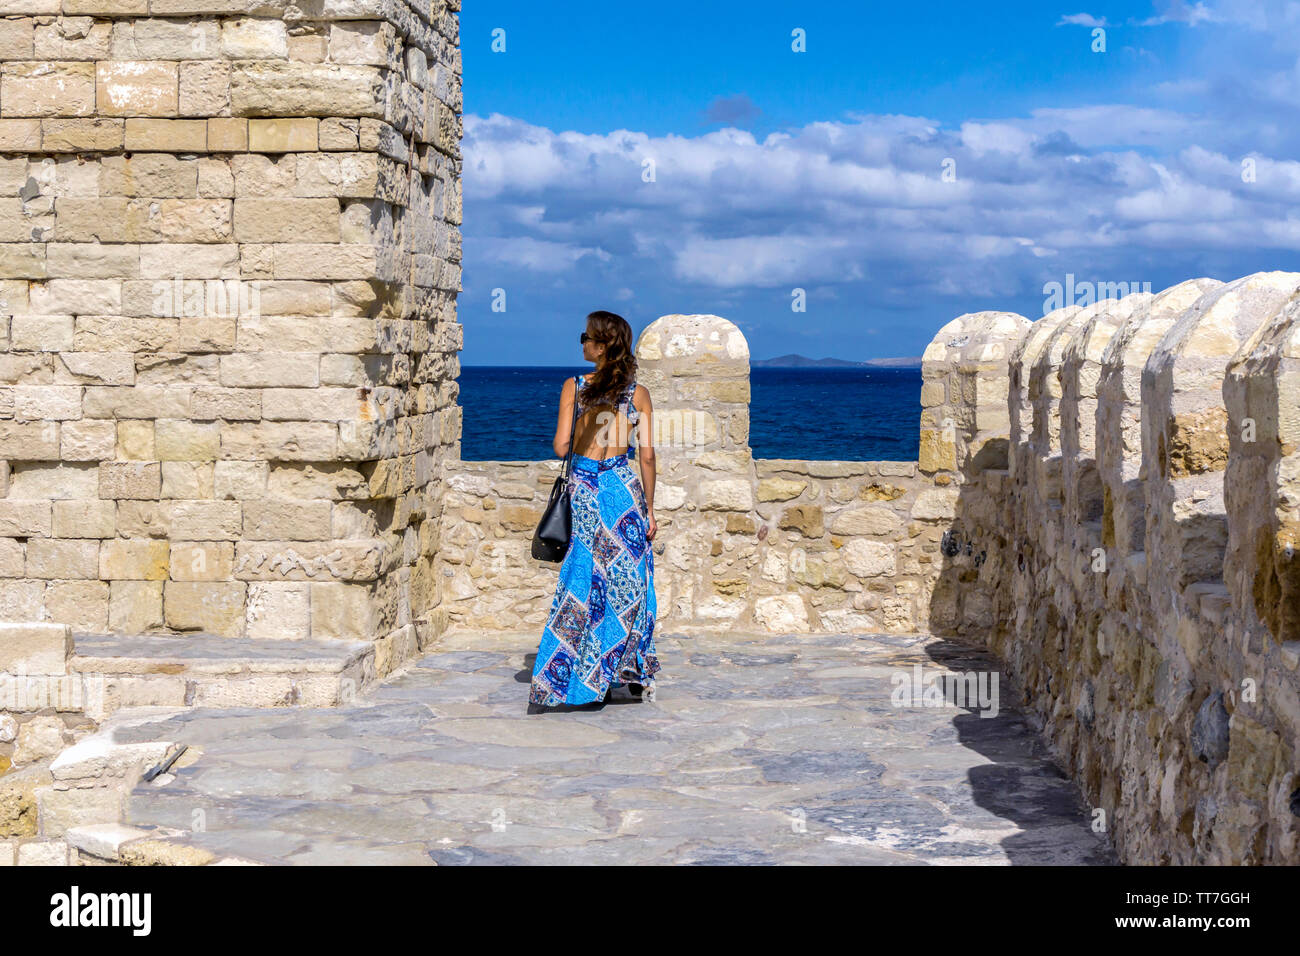 La città di Heraklion, Creta / Grecia. Donna in vestito blu godendo la vista panoramica del mare di Creta dal tetto della fortezza Koules Foto Stock